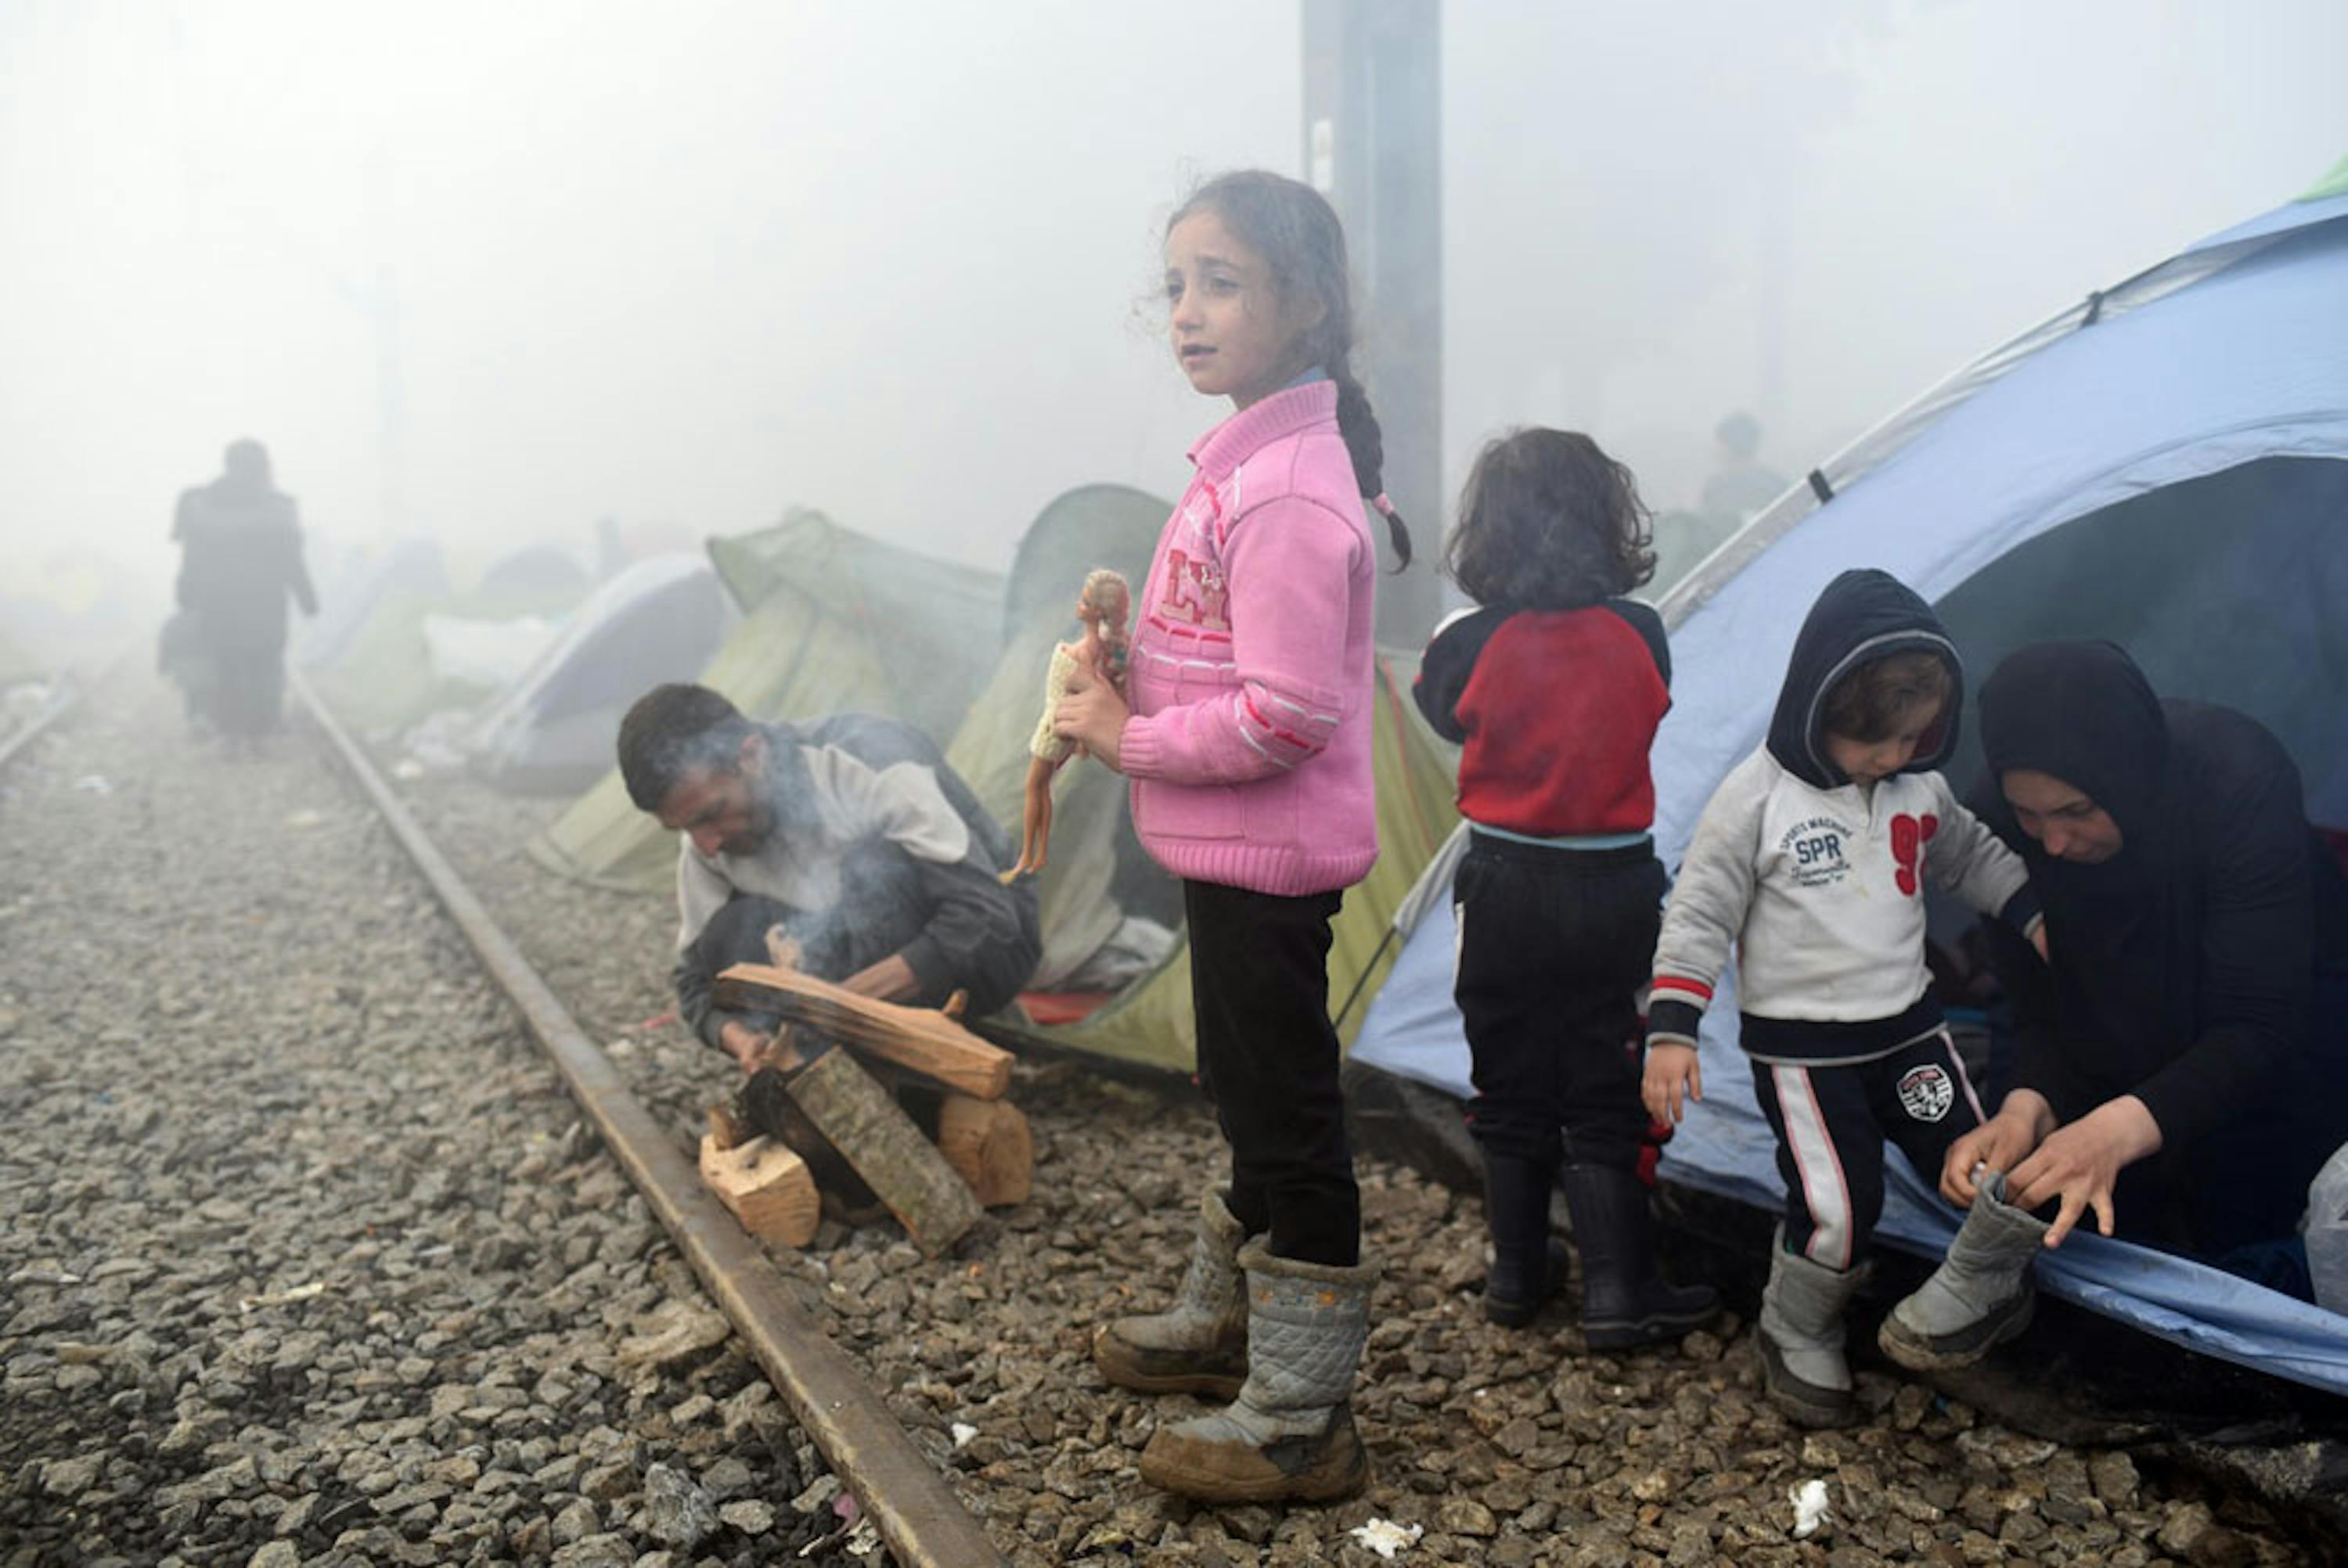 Centinaia di famiglie con bambini sono accampate da settimane accanto ai binari della ferrovia che collega la Grecia alla Macedonia, nella speranza che si apra il varco - ©UNICEF/UN012777/Georgiev